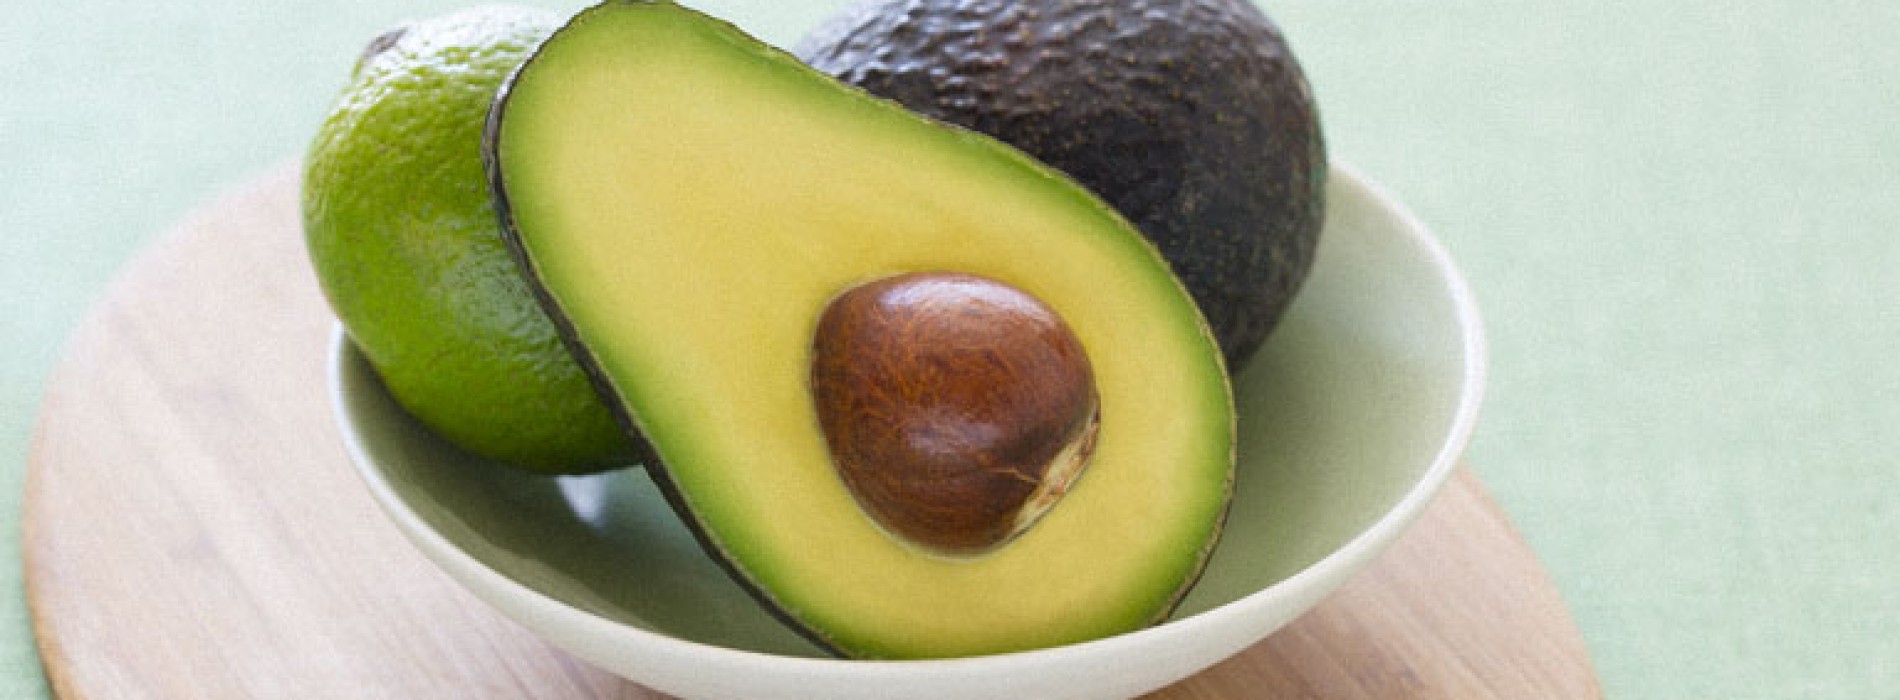 Dit zijn 5 gezondere redenen waarom je meer avocado’s zou moeten eten. Wist ik dit maar eerder!